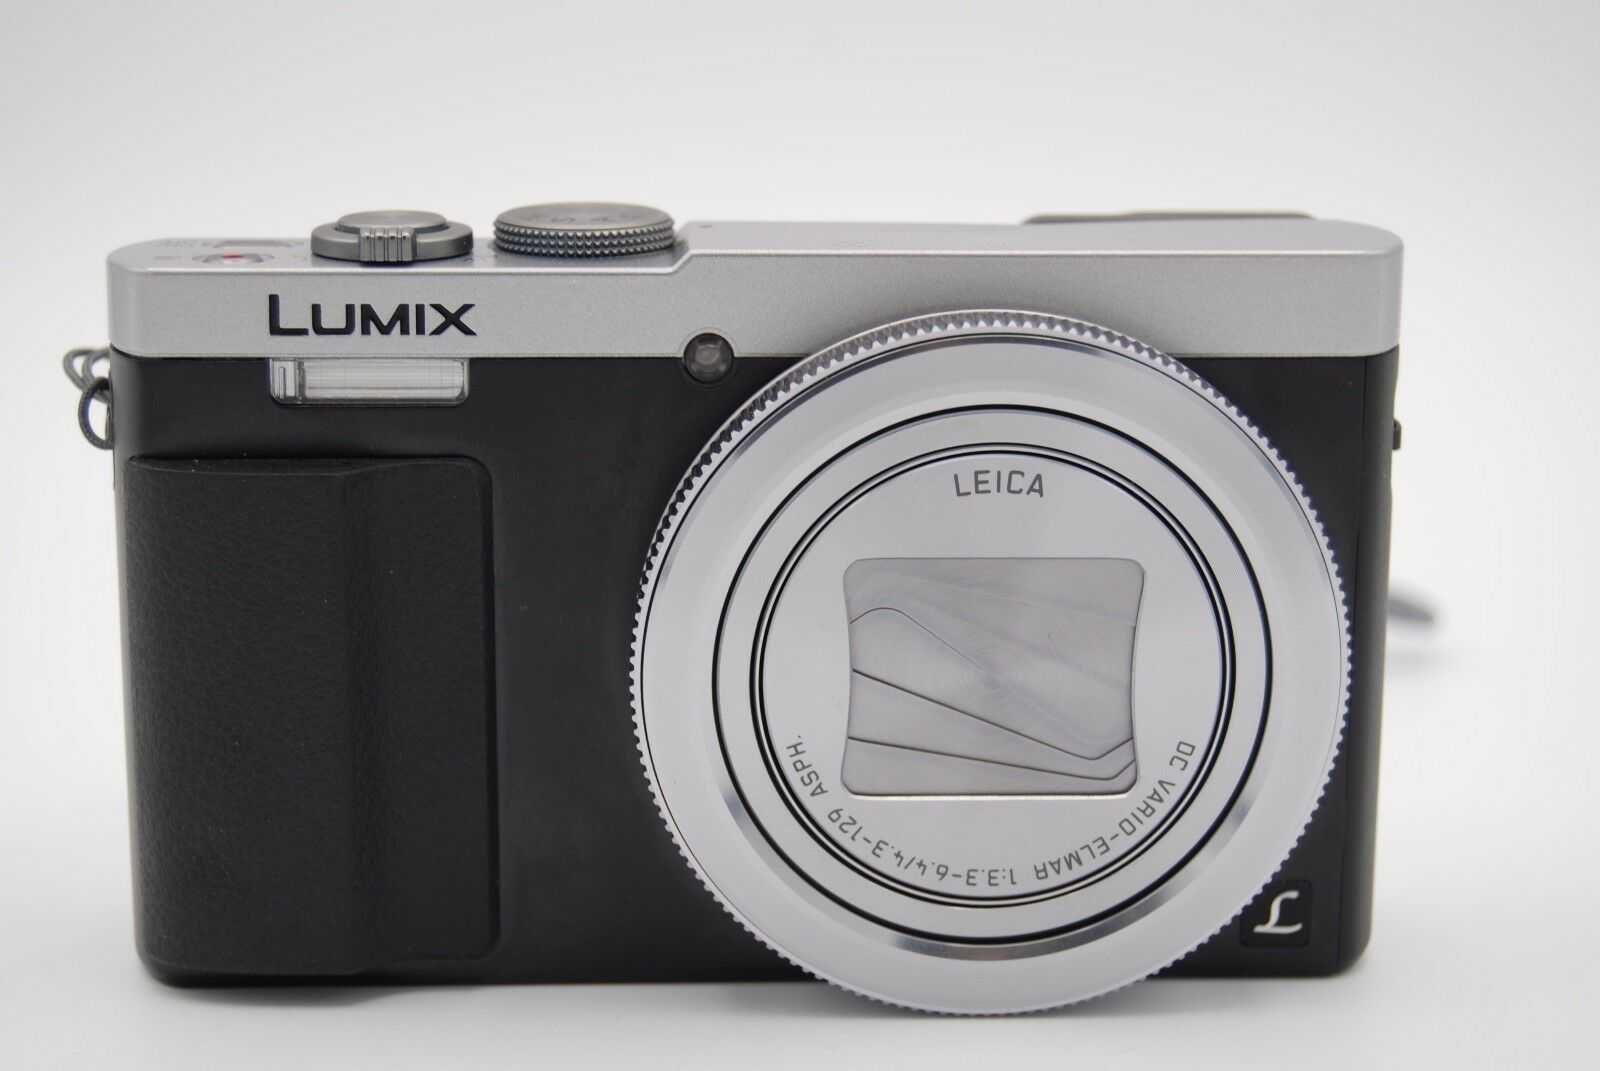 Цифровой фотоаппарат Panasonic Lumix DMC-GX1 14-42 Kit - подробные характеристики обзоры видео фото Цены в интернет-магазинах где можно купить цифровую фотоаппарат Panasonic Lumix DMC-GX1 14-42 Kit